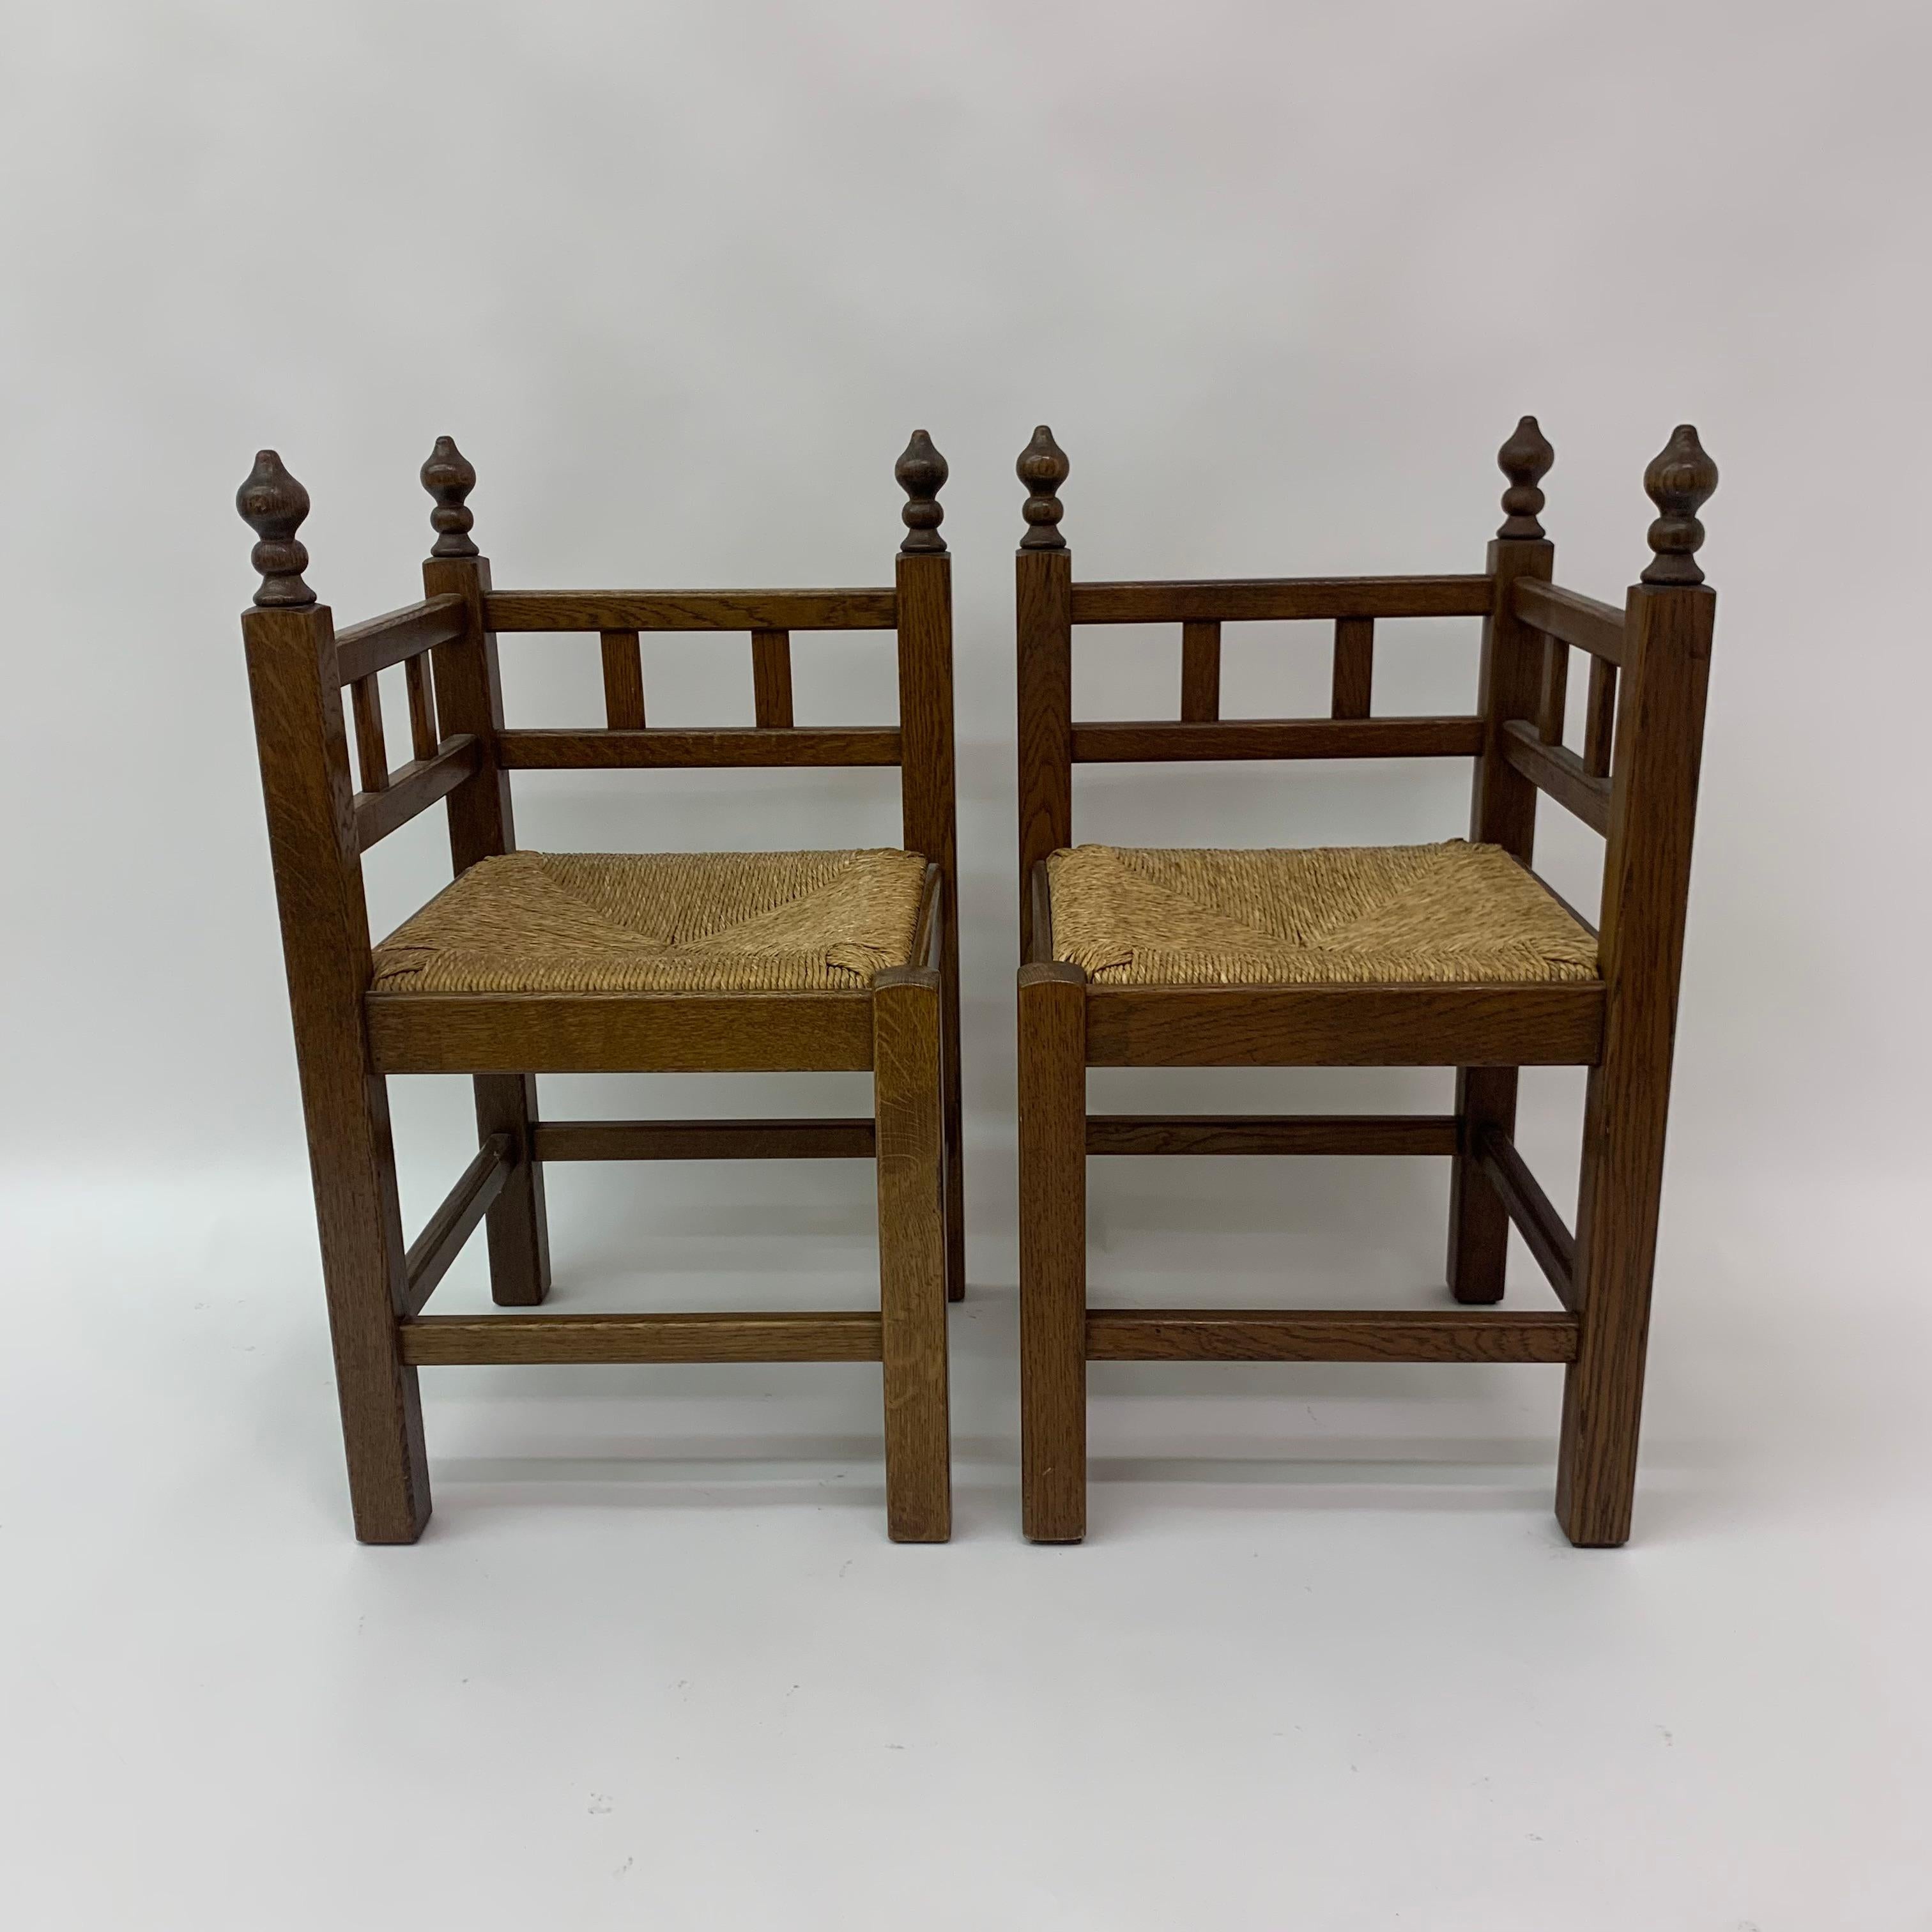 Set of 2 brutalist oak & wicker corner chairs, 1970’s
